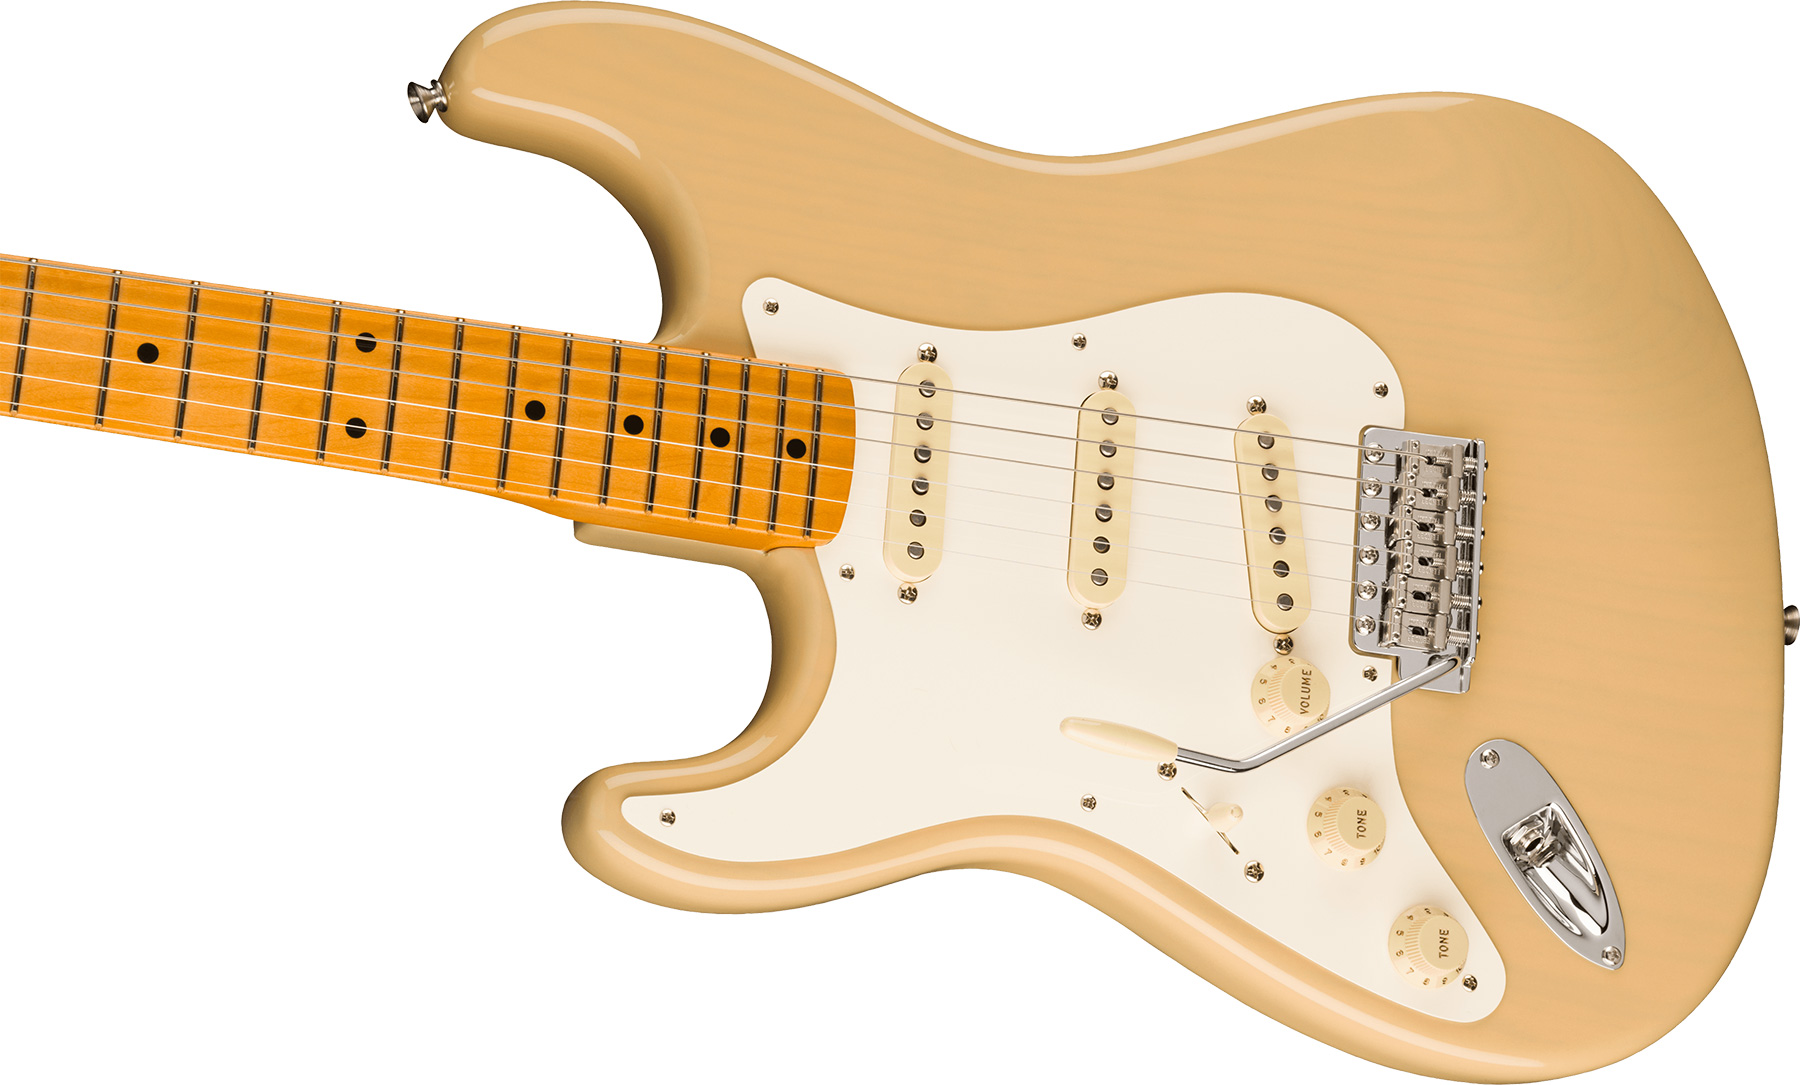 Fender Strat 1957 American Vintage Ii Lh Gaucher Usa 3s Trem Mn - Vintage Blonde - Linkshandige elektrische gitaar - Variation 2